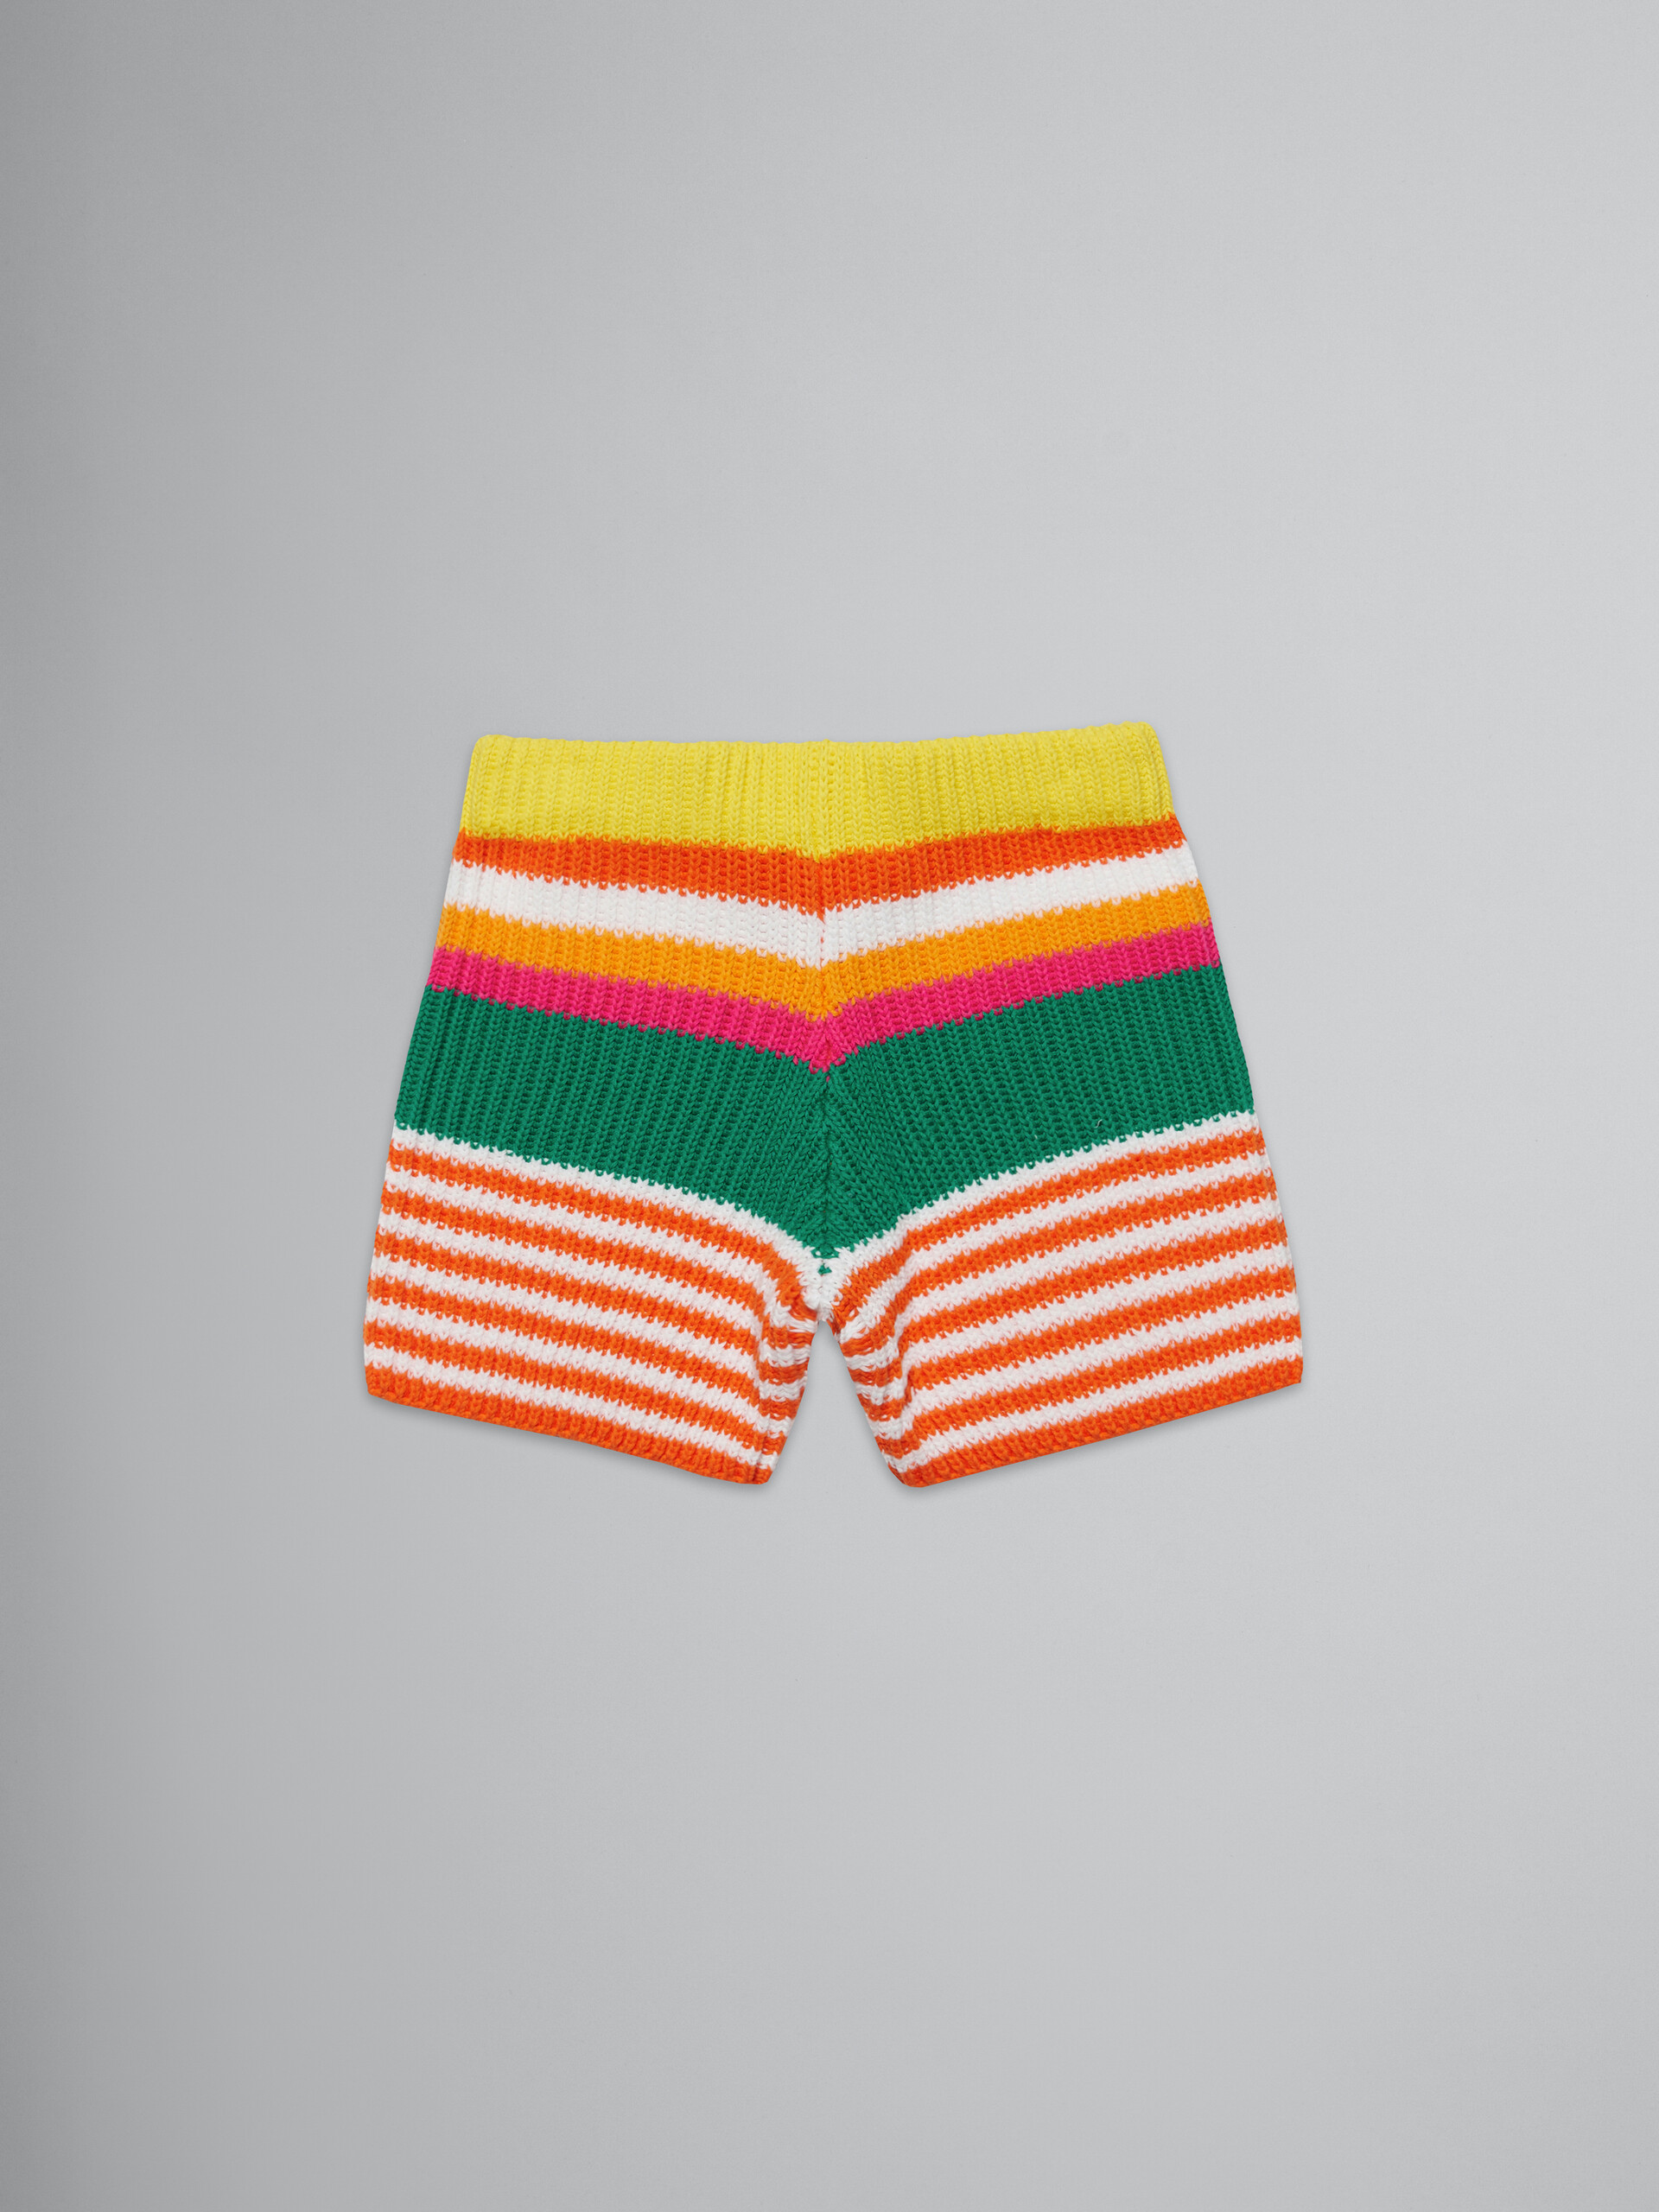 Pantalón corto de punto de rayas multicolores - Pantalones - Image 2